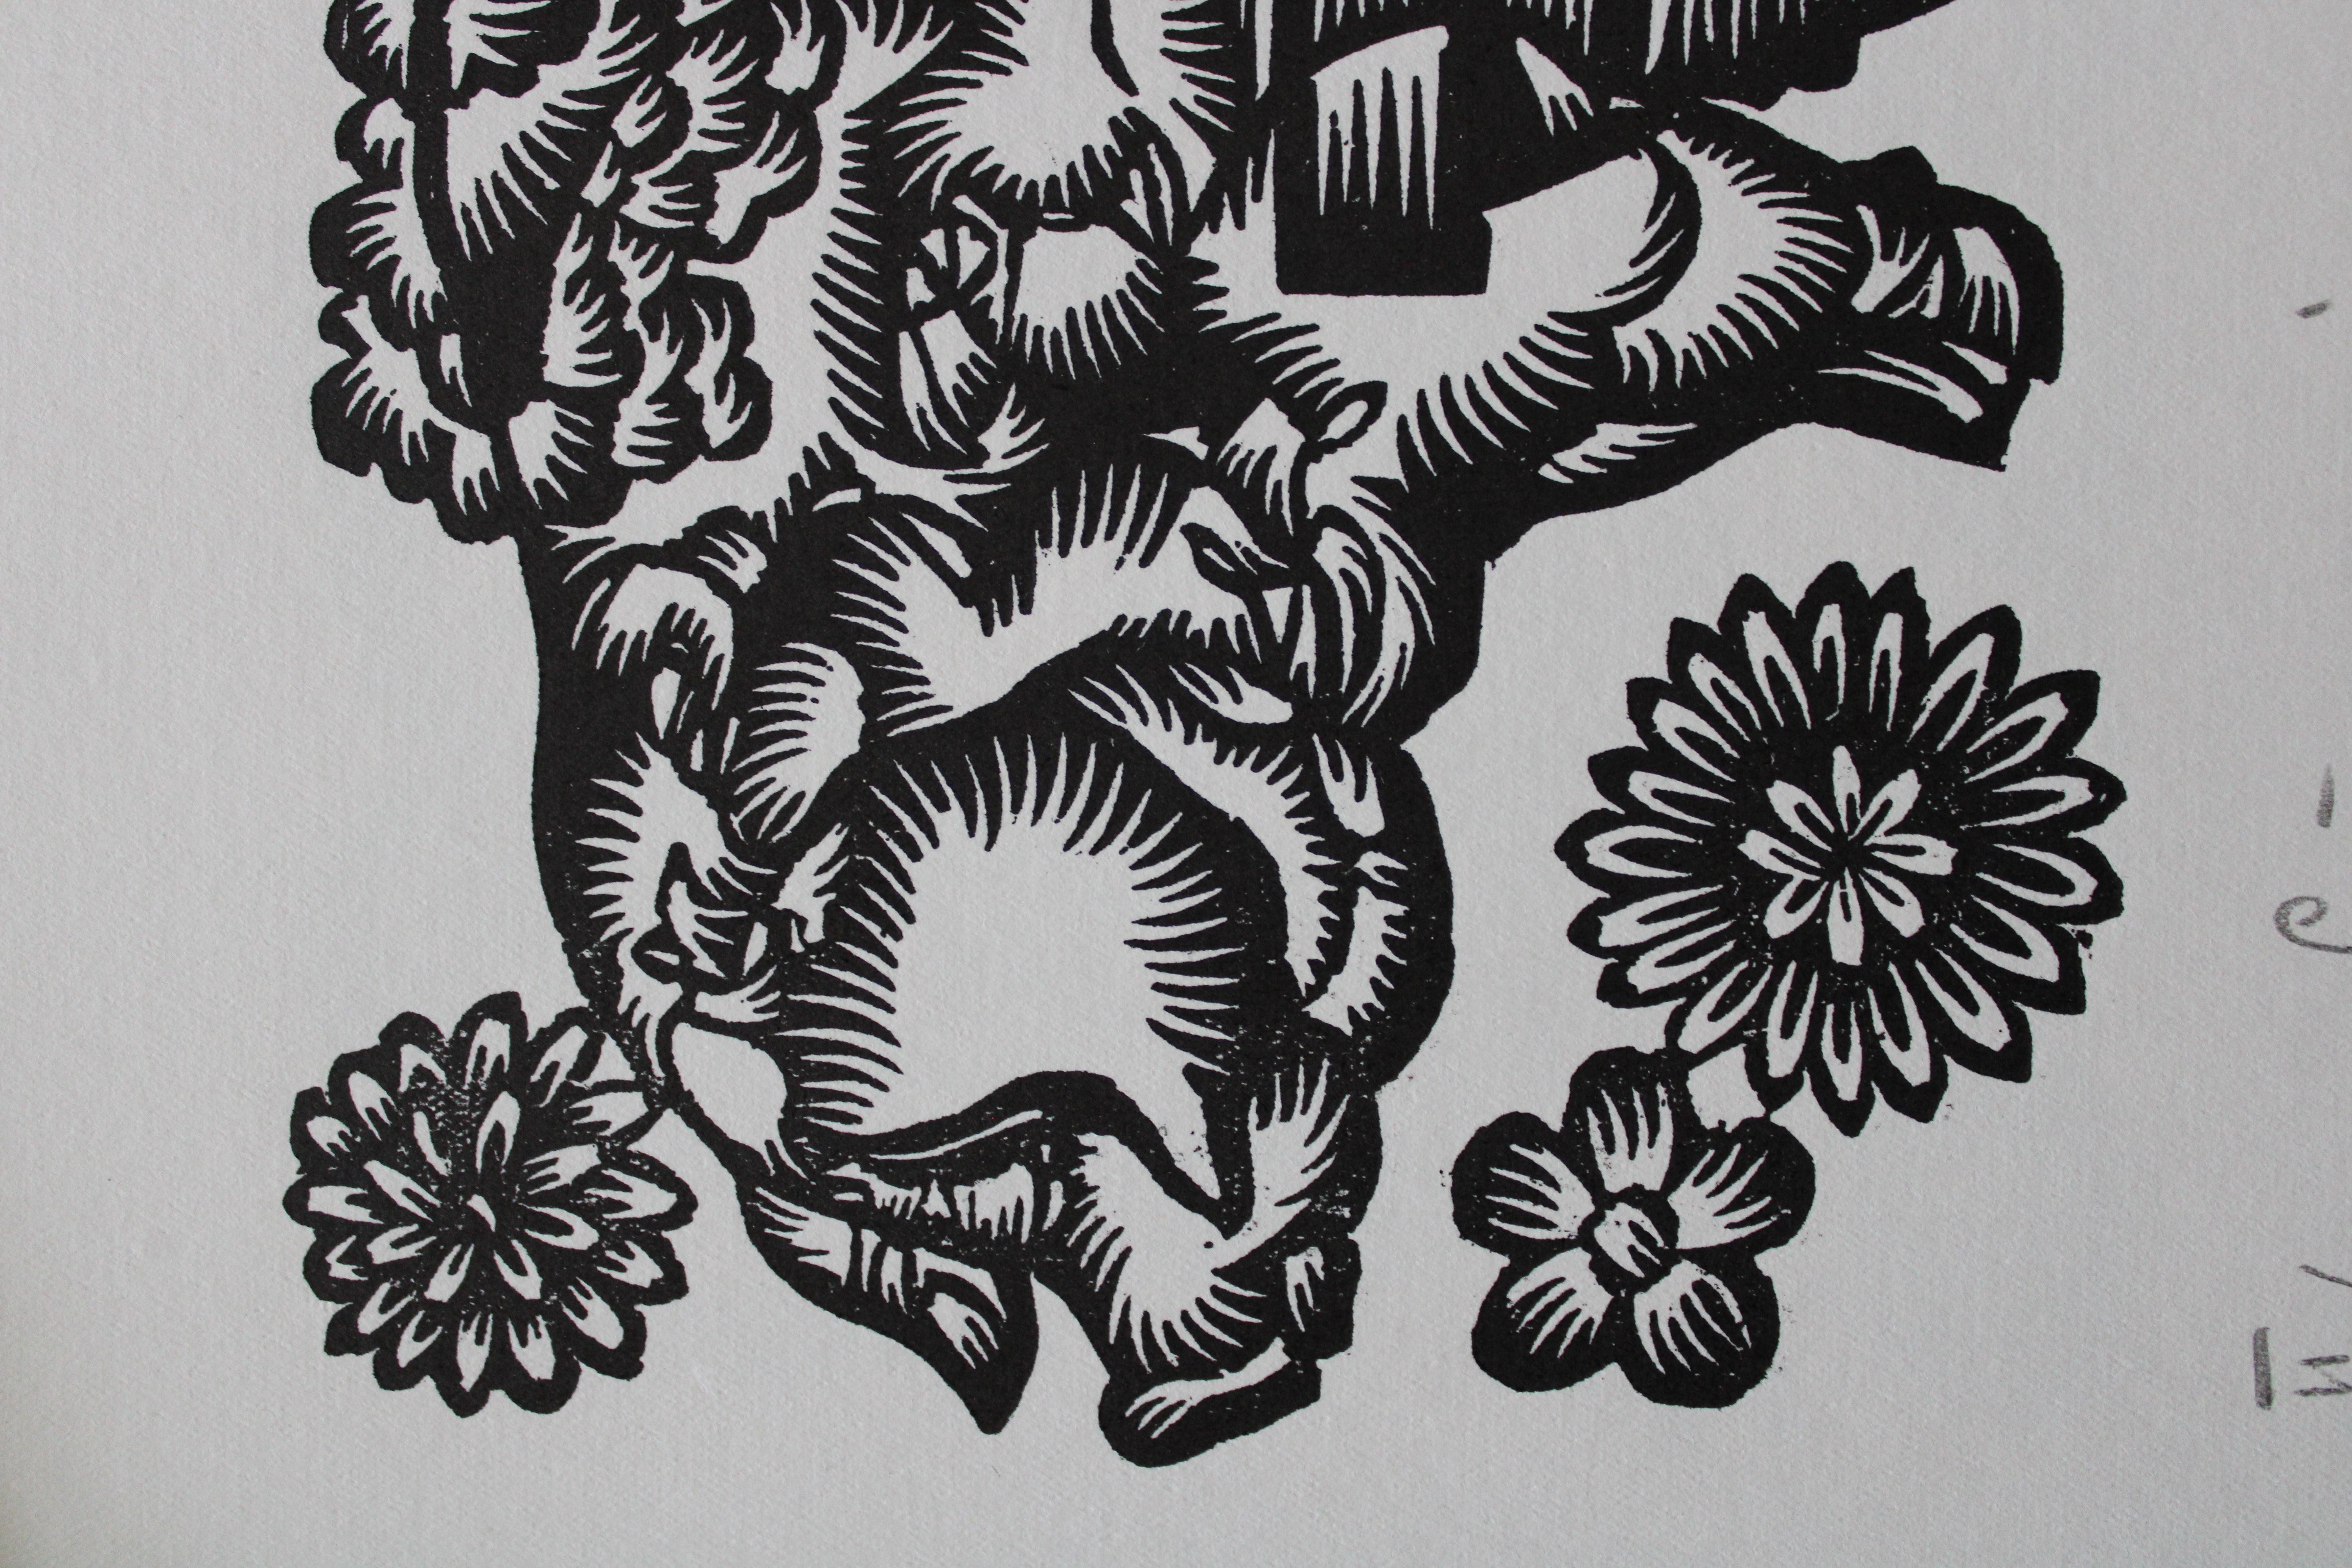 Beruf des Schweinezüchters. 1979. Papier, Linolschnitt, 25x34 cm (Volkskunst), Print, von Dainis Rozkalns